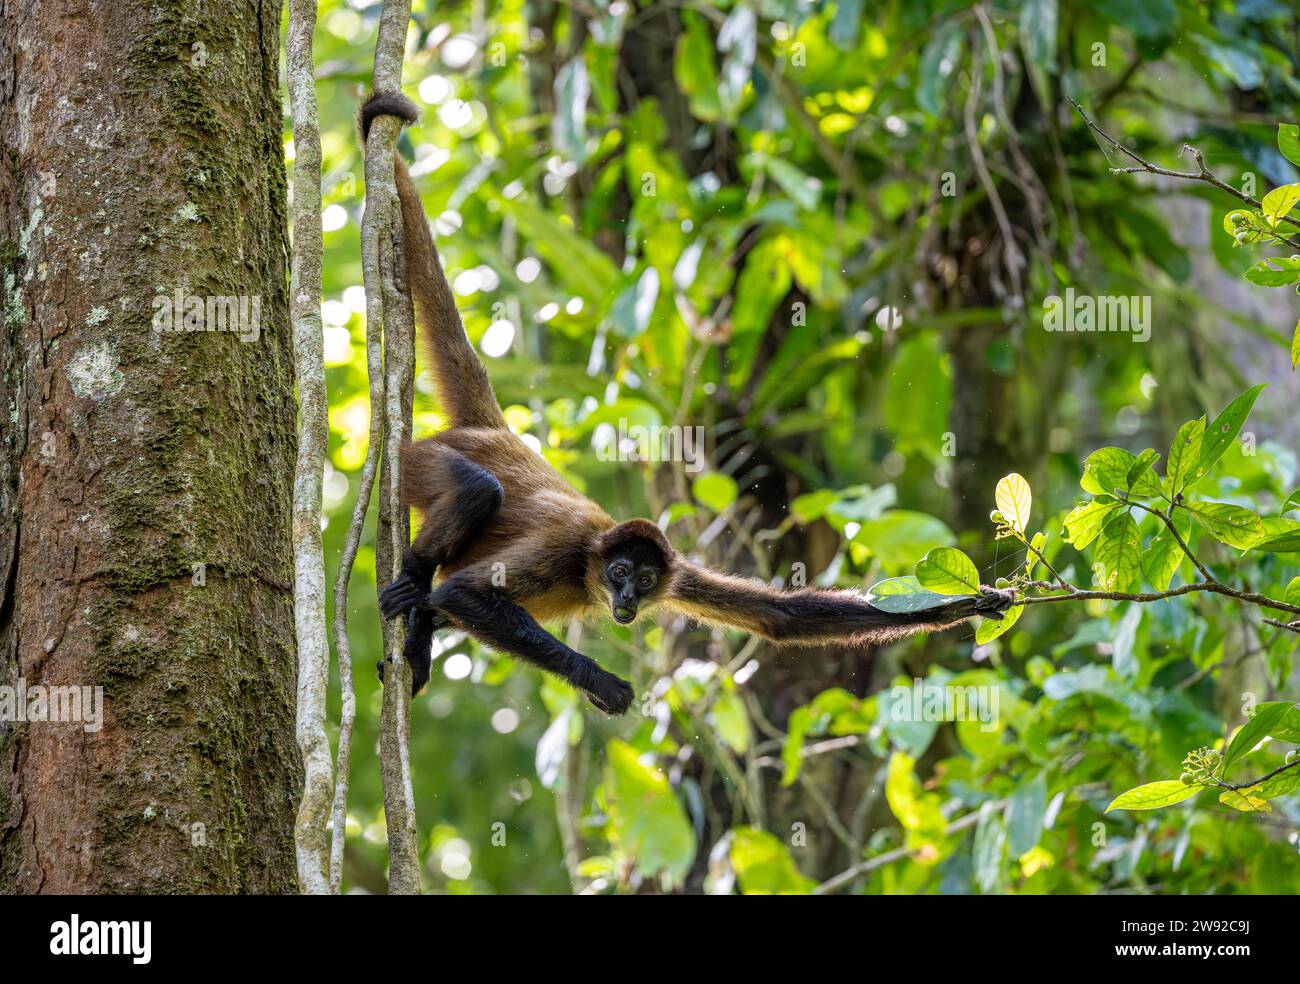 Geoffroys Spinnenaffen (Ateles geoffroyi) hängt in einem Baum und isst, Tortuguero Nationalpark, Karibikküste, Costa Rica Stockfoto